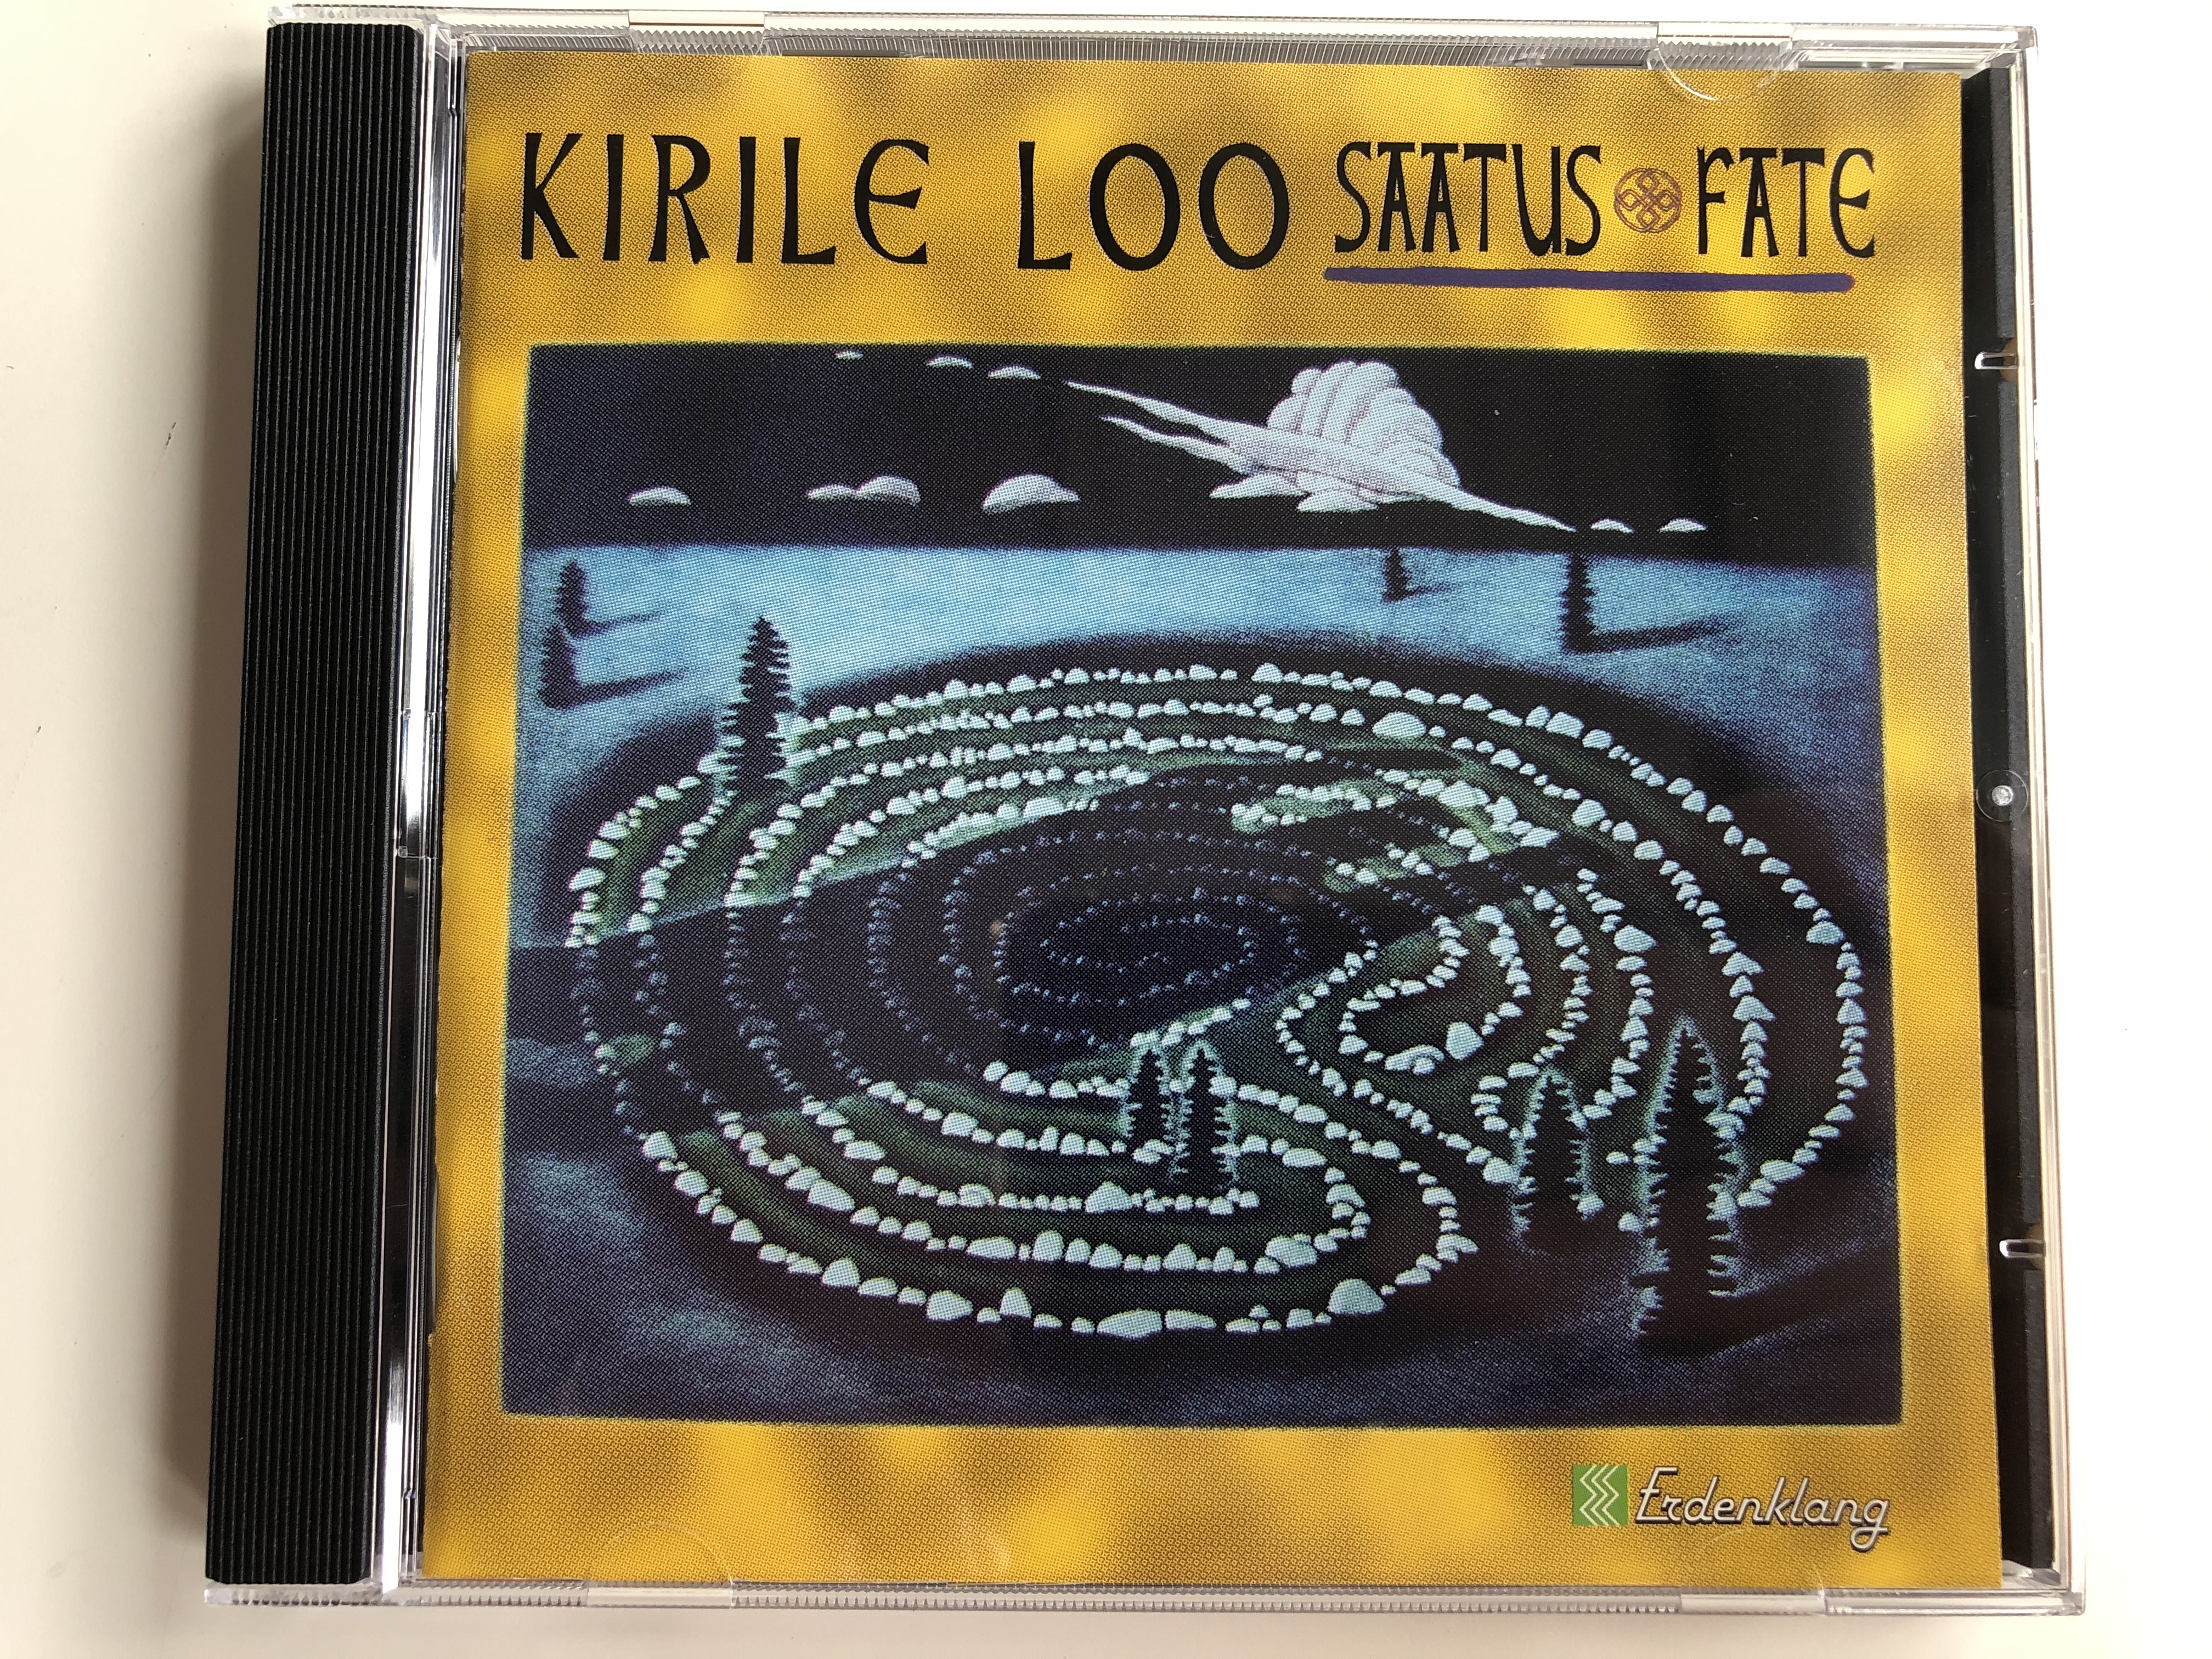 kirile-loo-saatus-fate-erdenklang-audio-cd-1994-stereo-40772-1-.jpg